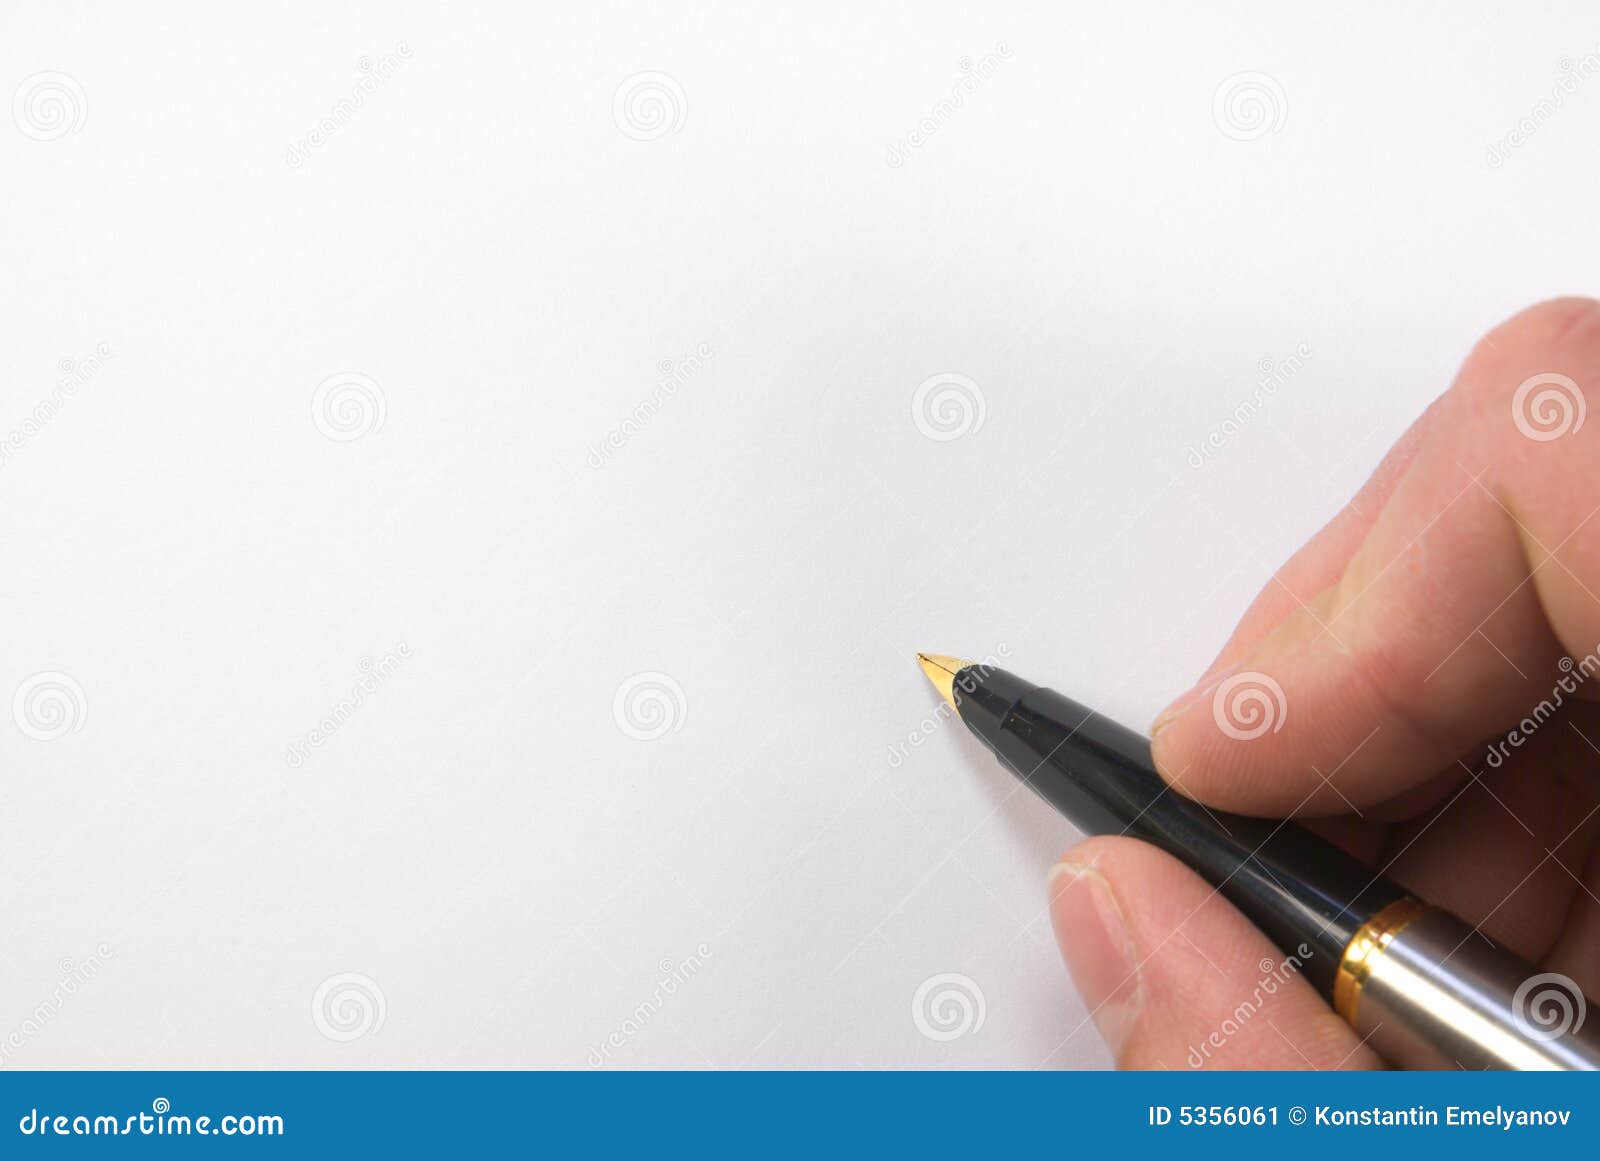 Pen over blank paper stock image. Image of fingernail - 5356061